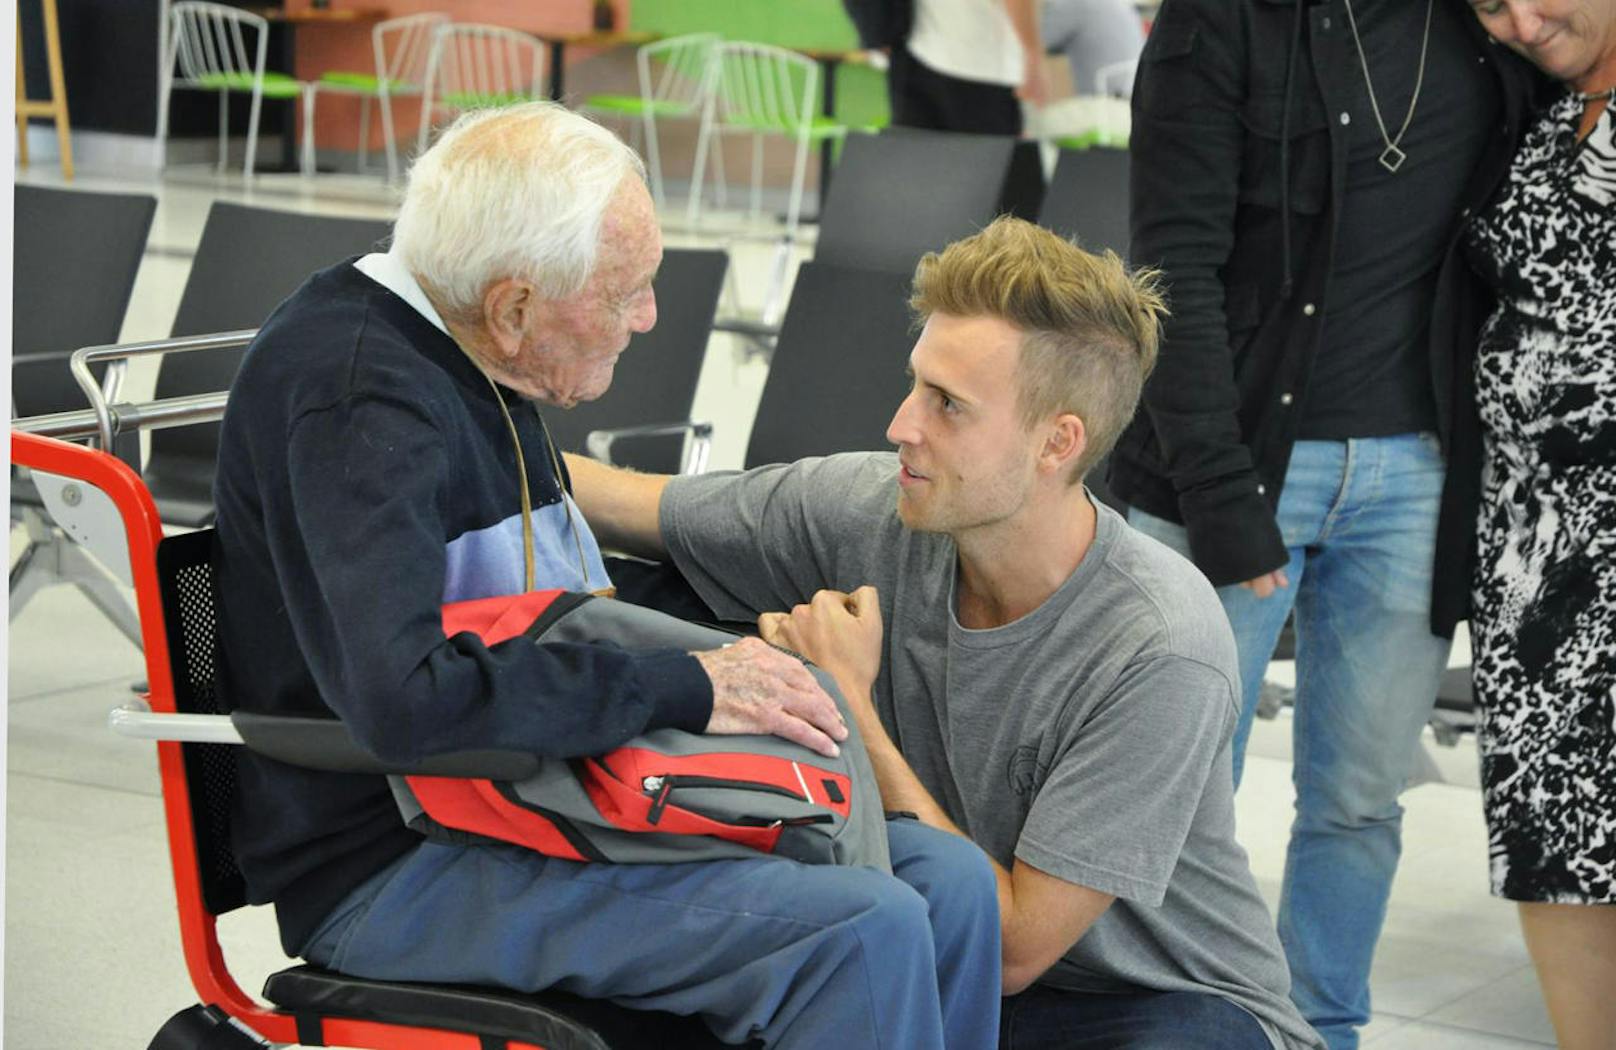 Am 2. Mai trat David Goodall (104) seine letzte Reise in die Schweiz an. Am Flughafen Perth nahm er Abschied von seinem Enkelsohn.